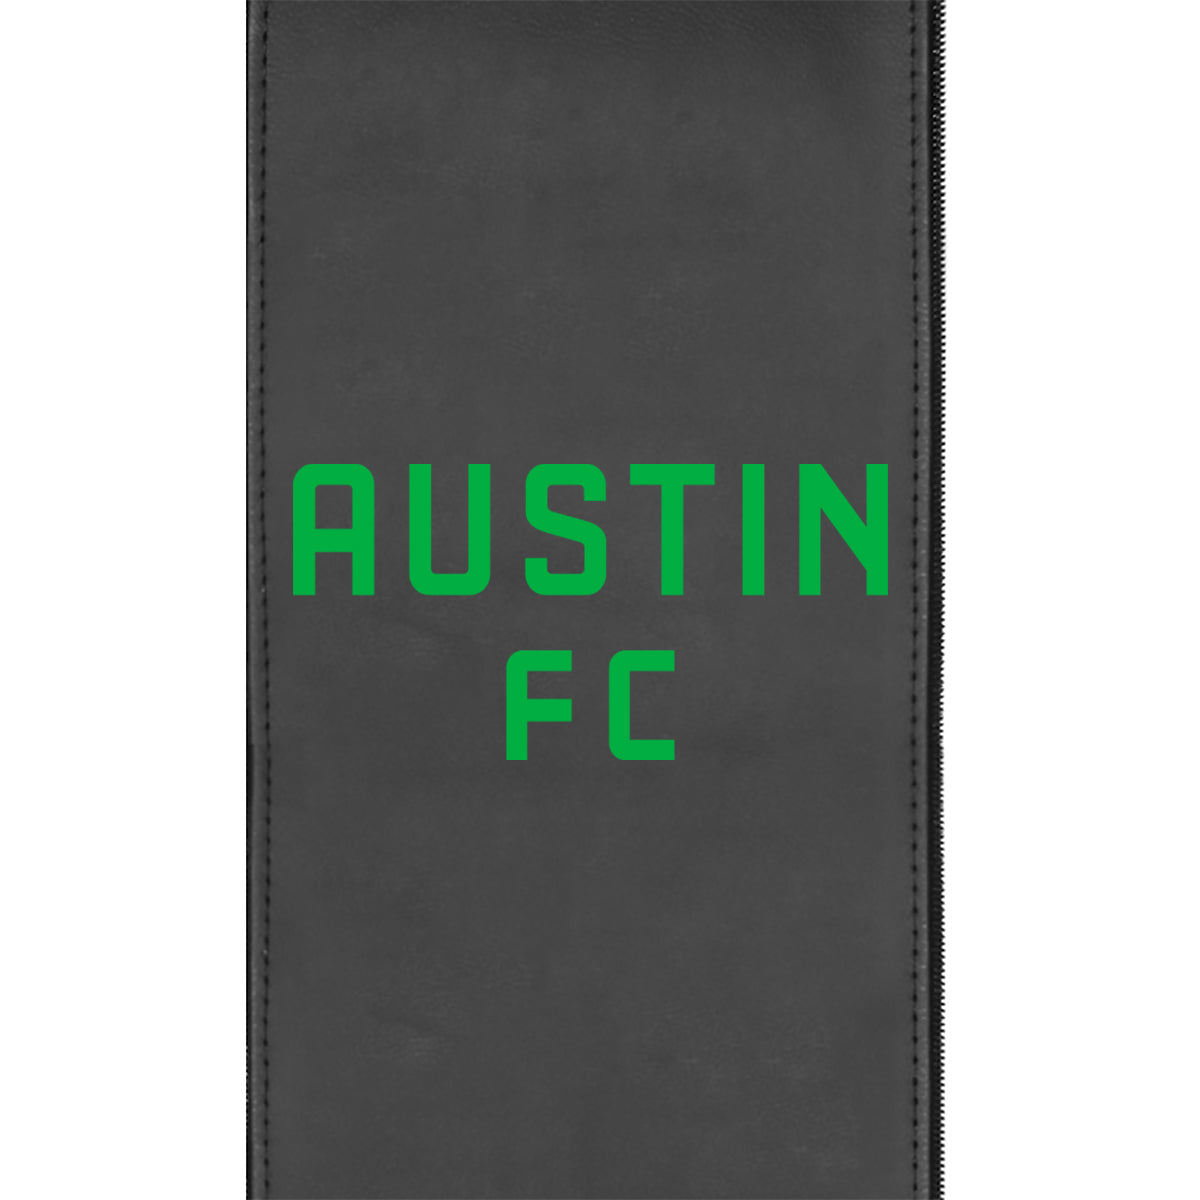 Silver Club Chair with Austin FC Wordmark Logo